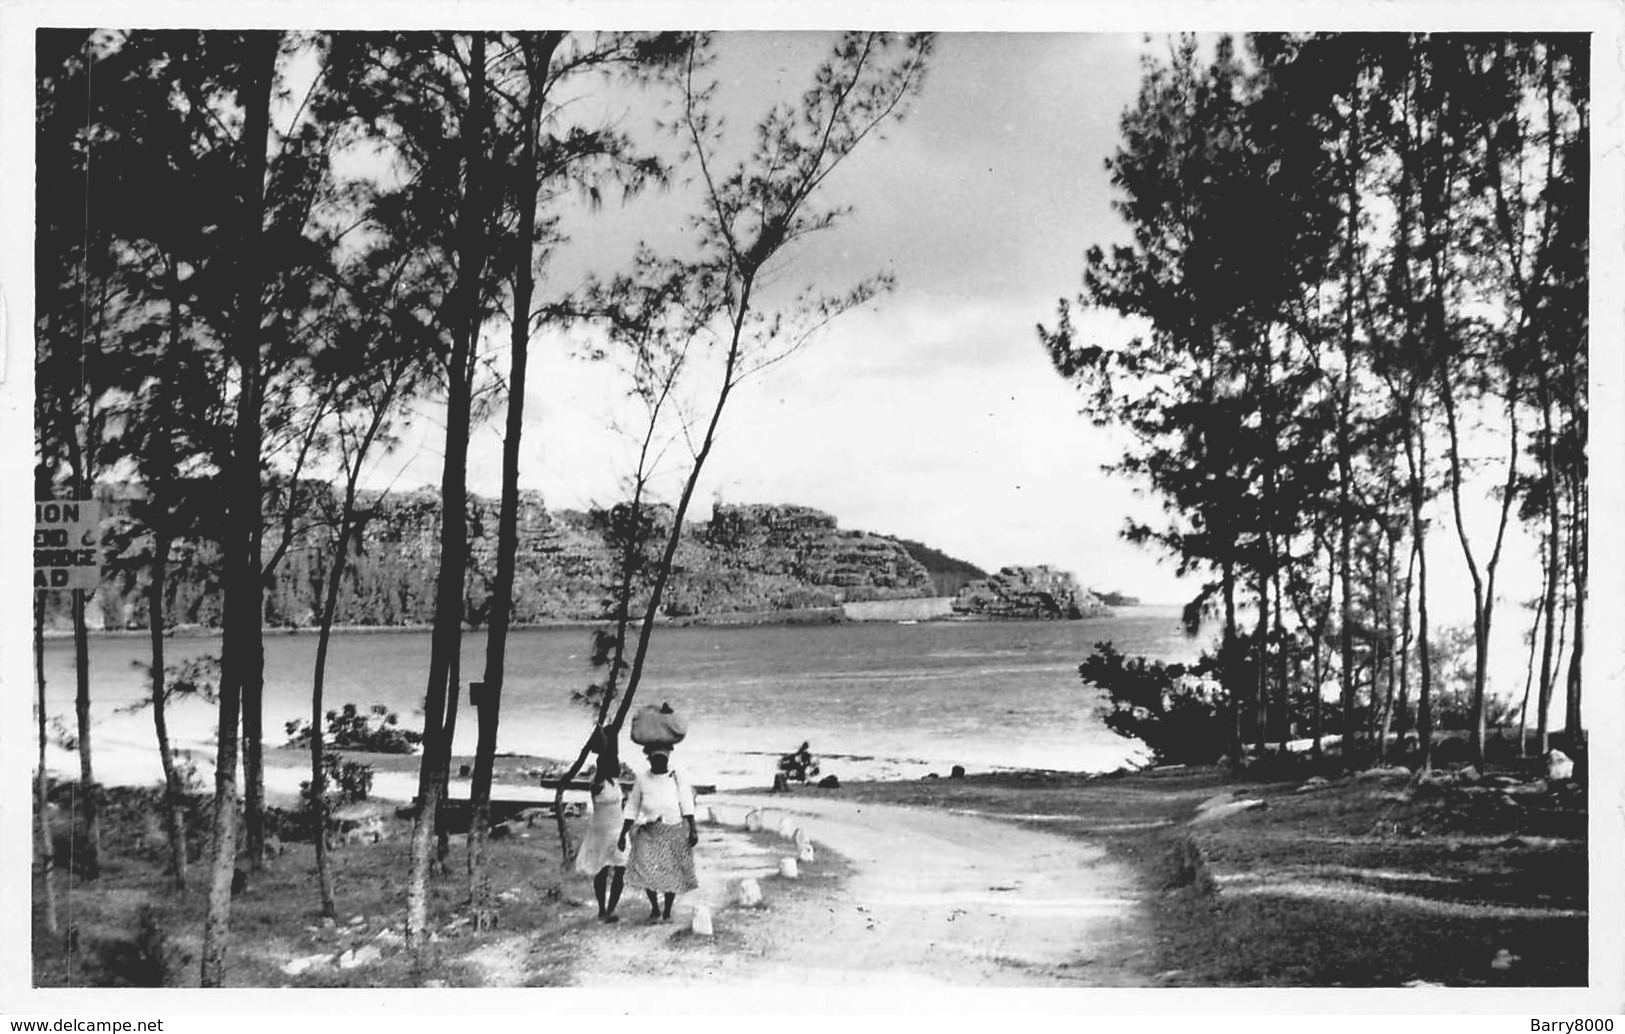 Mauritius Carte Postale De Luxe, Photo E. Jean-Louis Curepipe Beautés De L'Ile Maurice  Maconde Savanne      Barry 1934 - Maurice